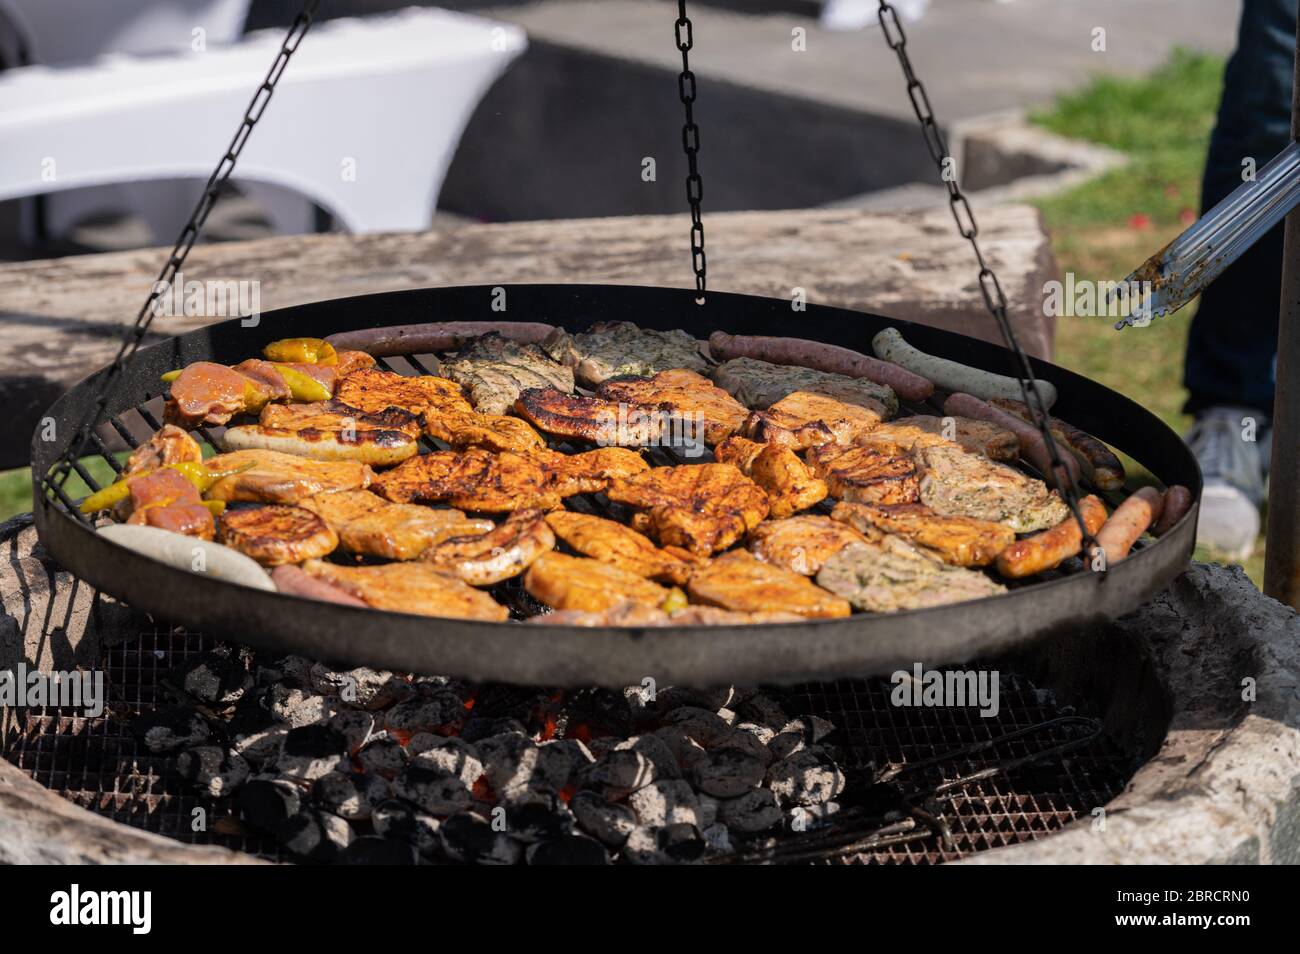 Food, Deutschland, May 20. Grillgut liegt auf einem Rost und grillt über einem Holzkohlegrill . Stock Photo